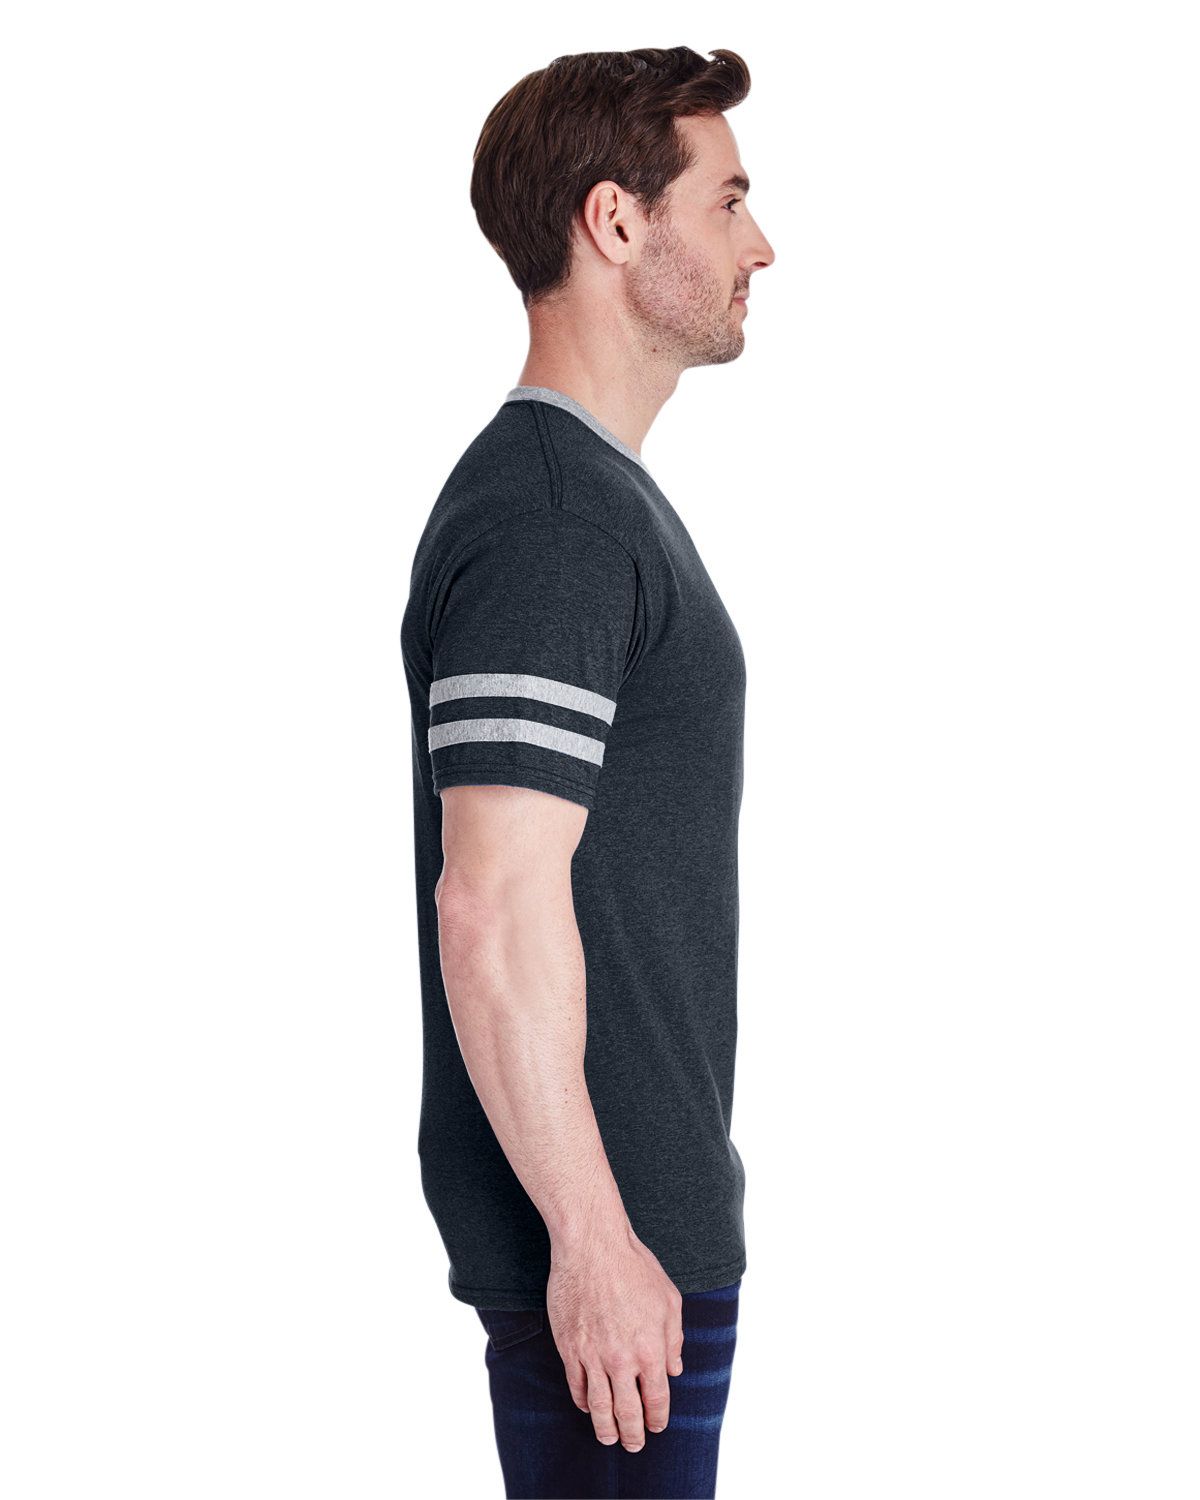 'Jerzees 602MR Adult TRI-BLEND Varsity Ringer T-Shirt'